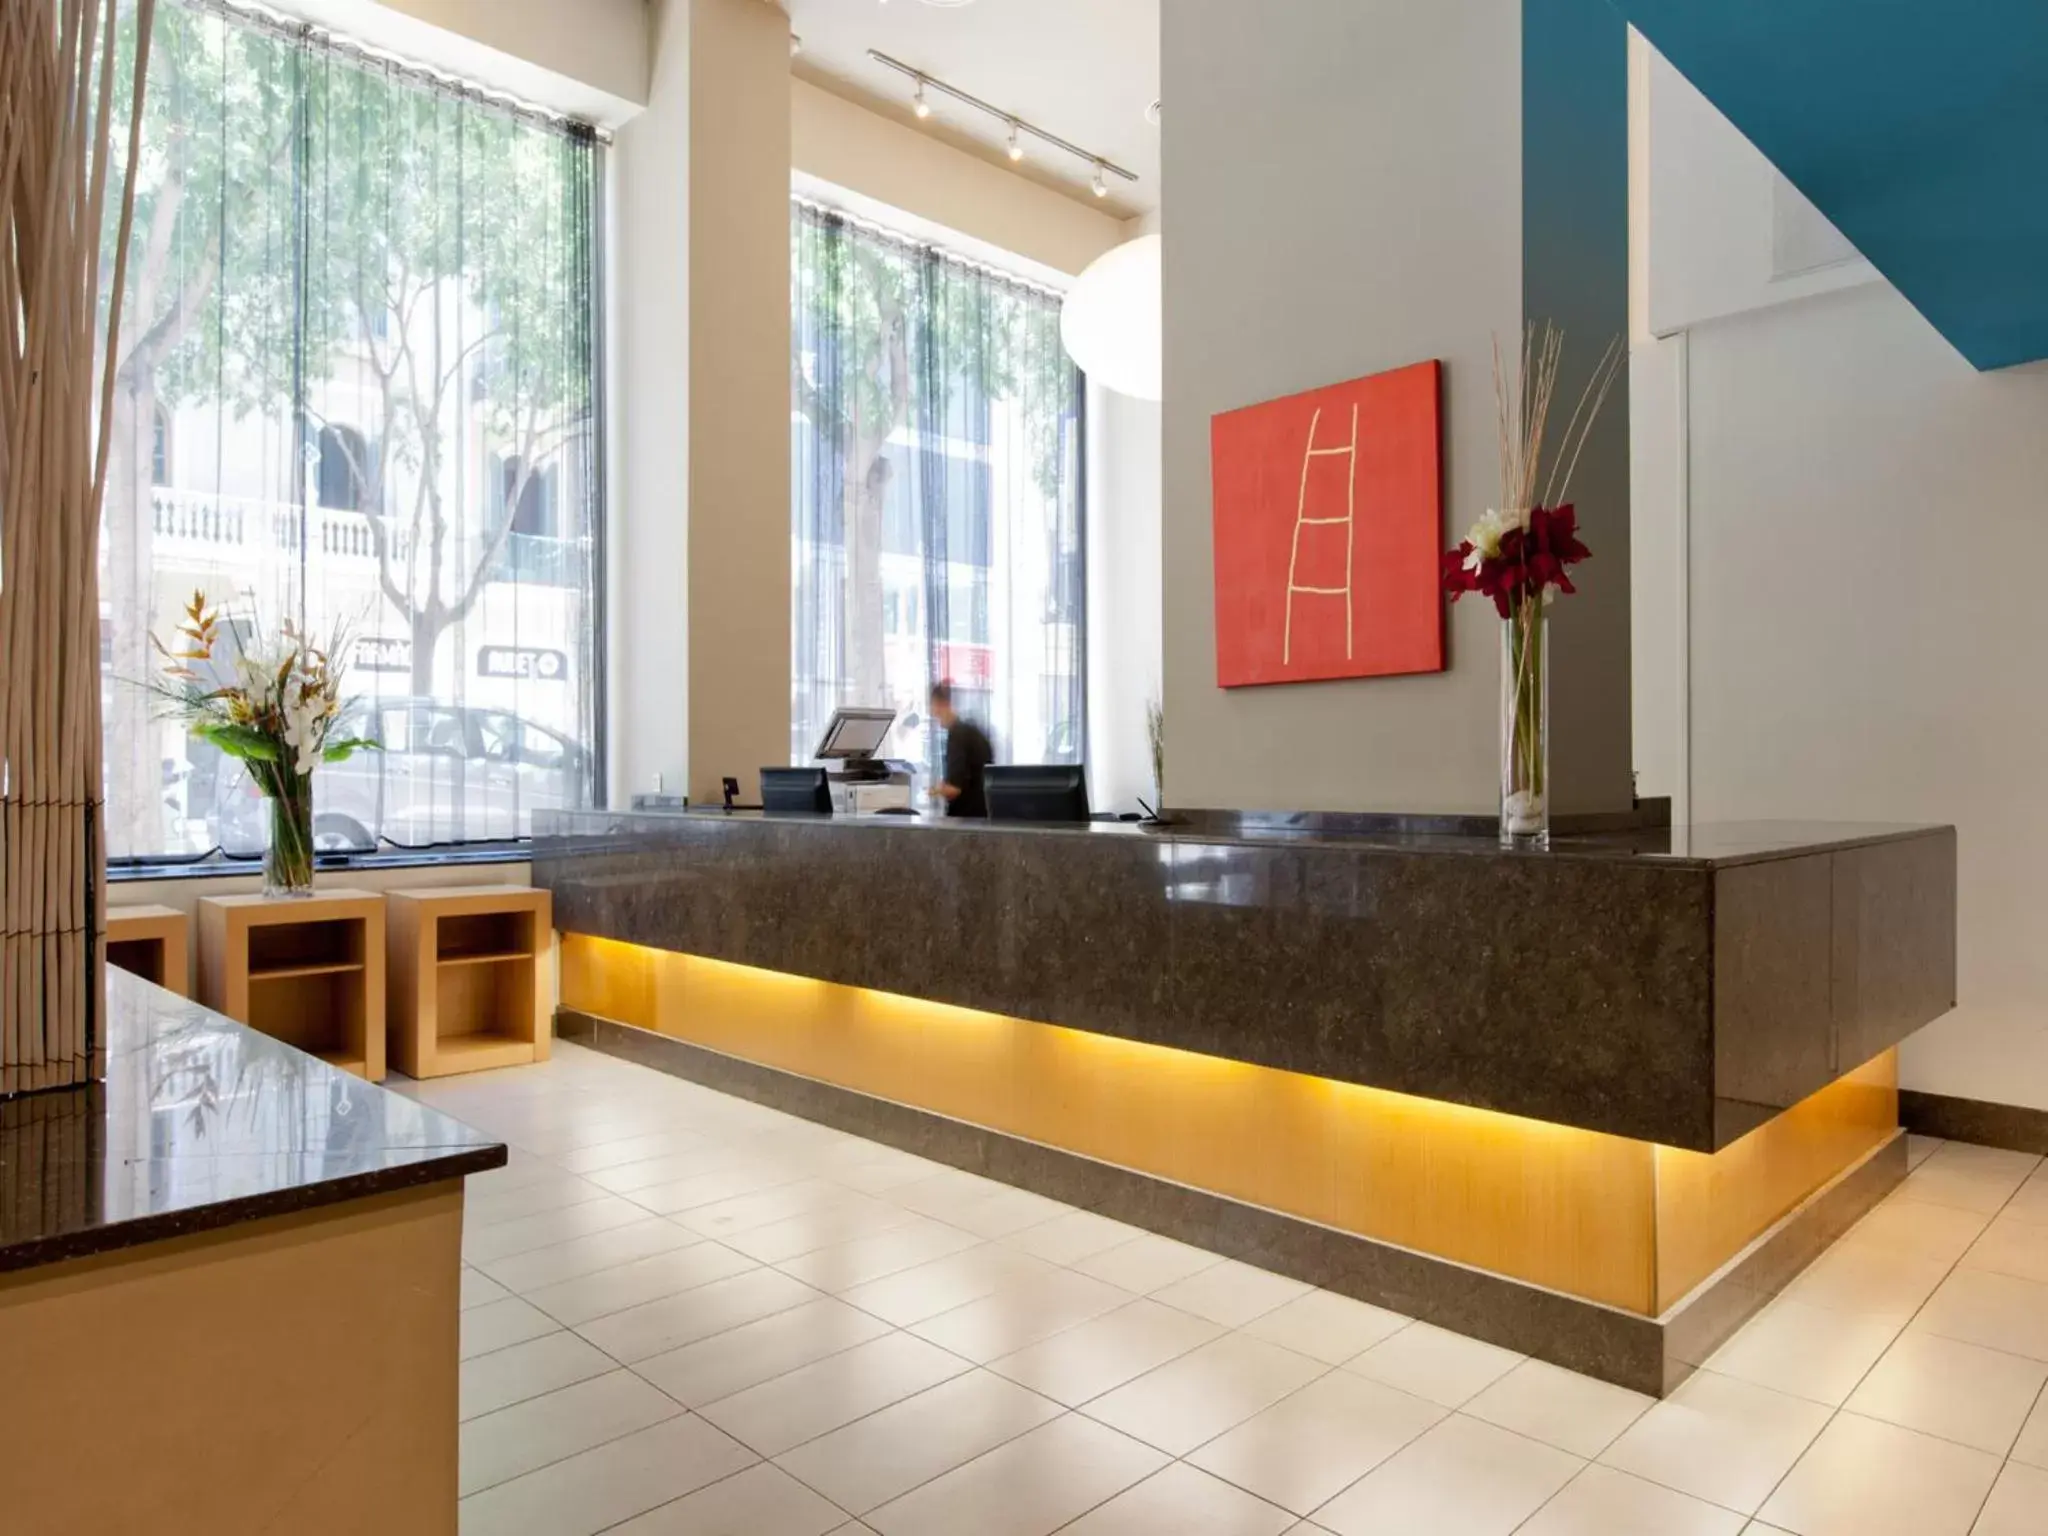 Lobby or reception, Lobby/Reception in Hotel Sagrada Familia